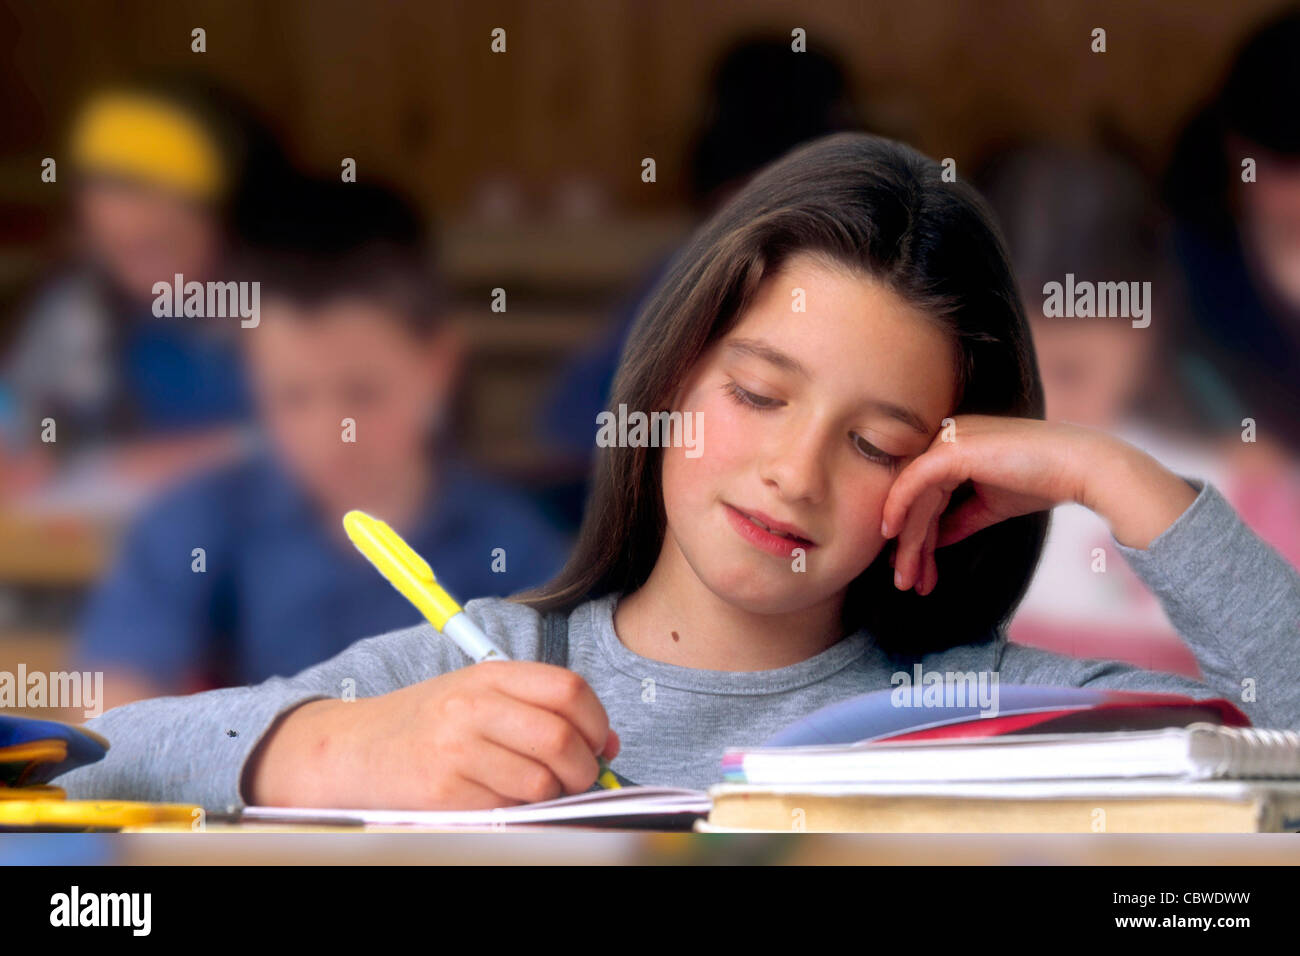 Jeune fille dans une salle de classe - petite fille dans une salle de classe pendant une leçon d'écriture. Banque D'Images